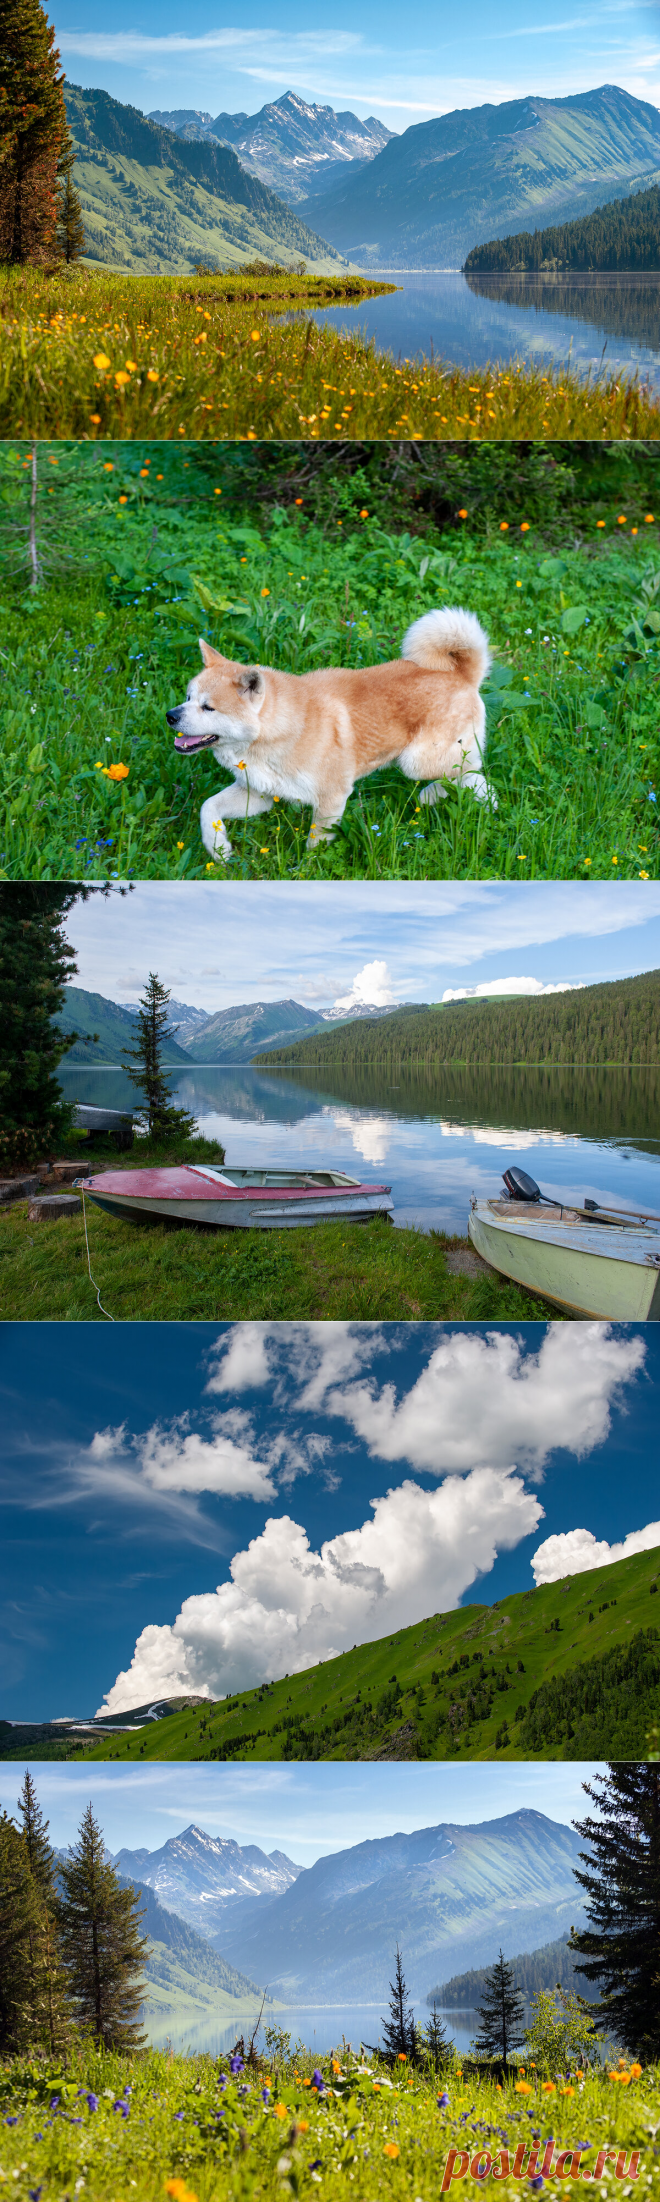 Тальменное озеро - дивный изумруд Горного Алтая | Фотопутешествия | Яндекс Дзен